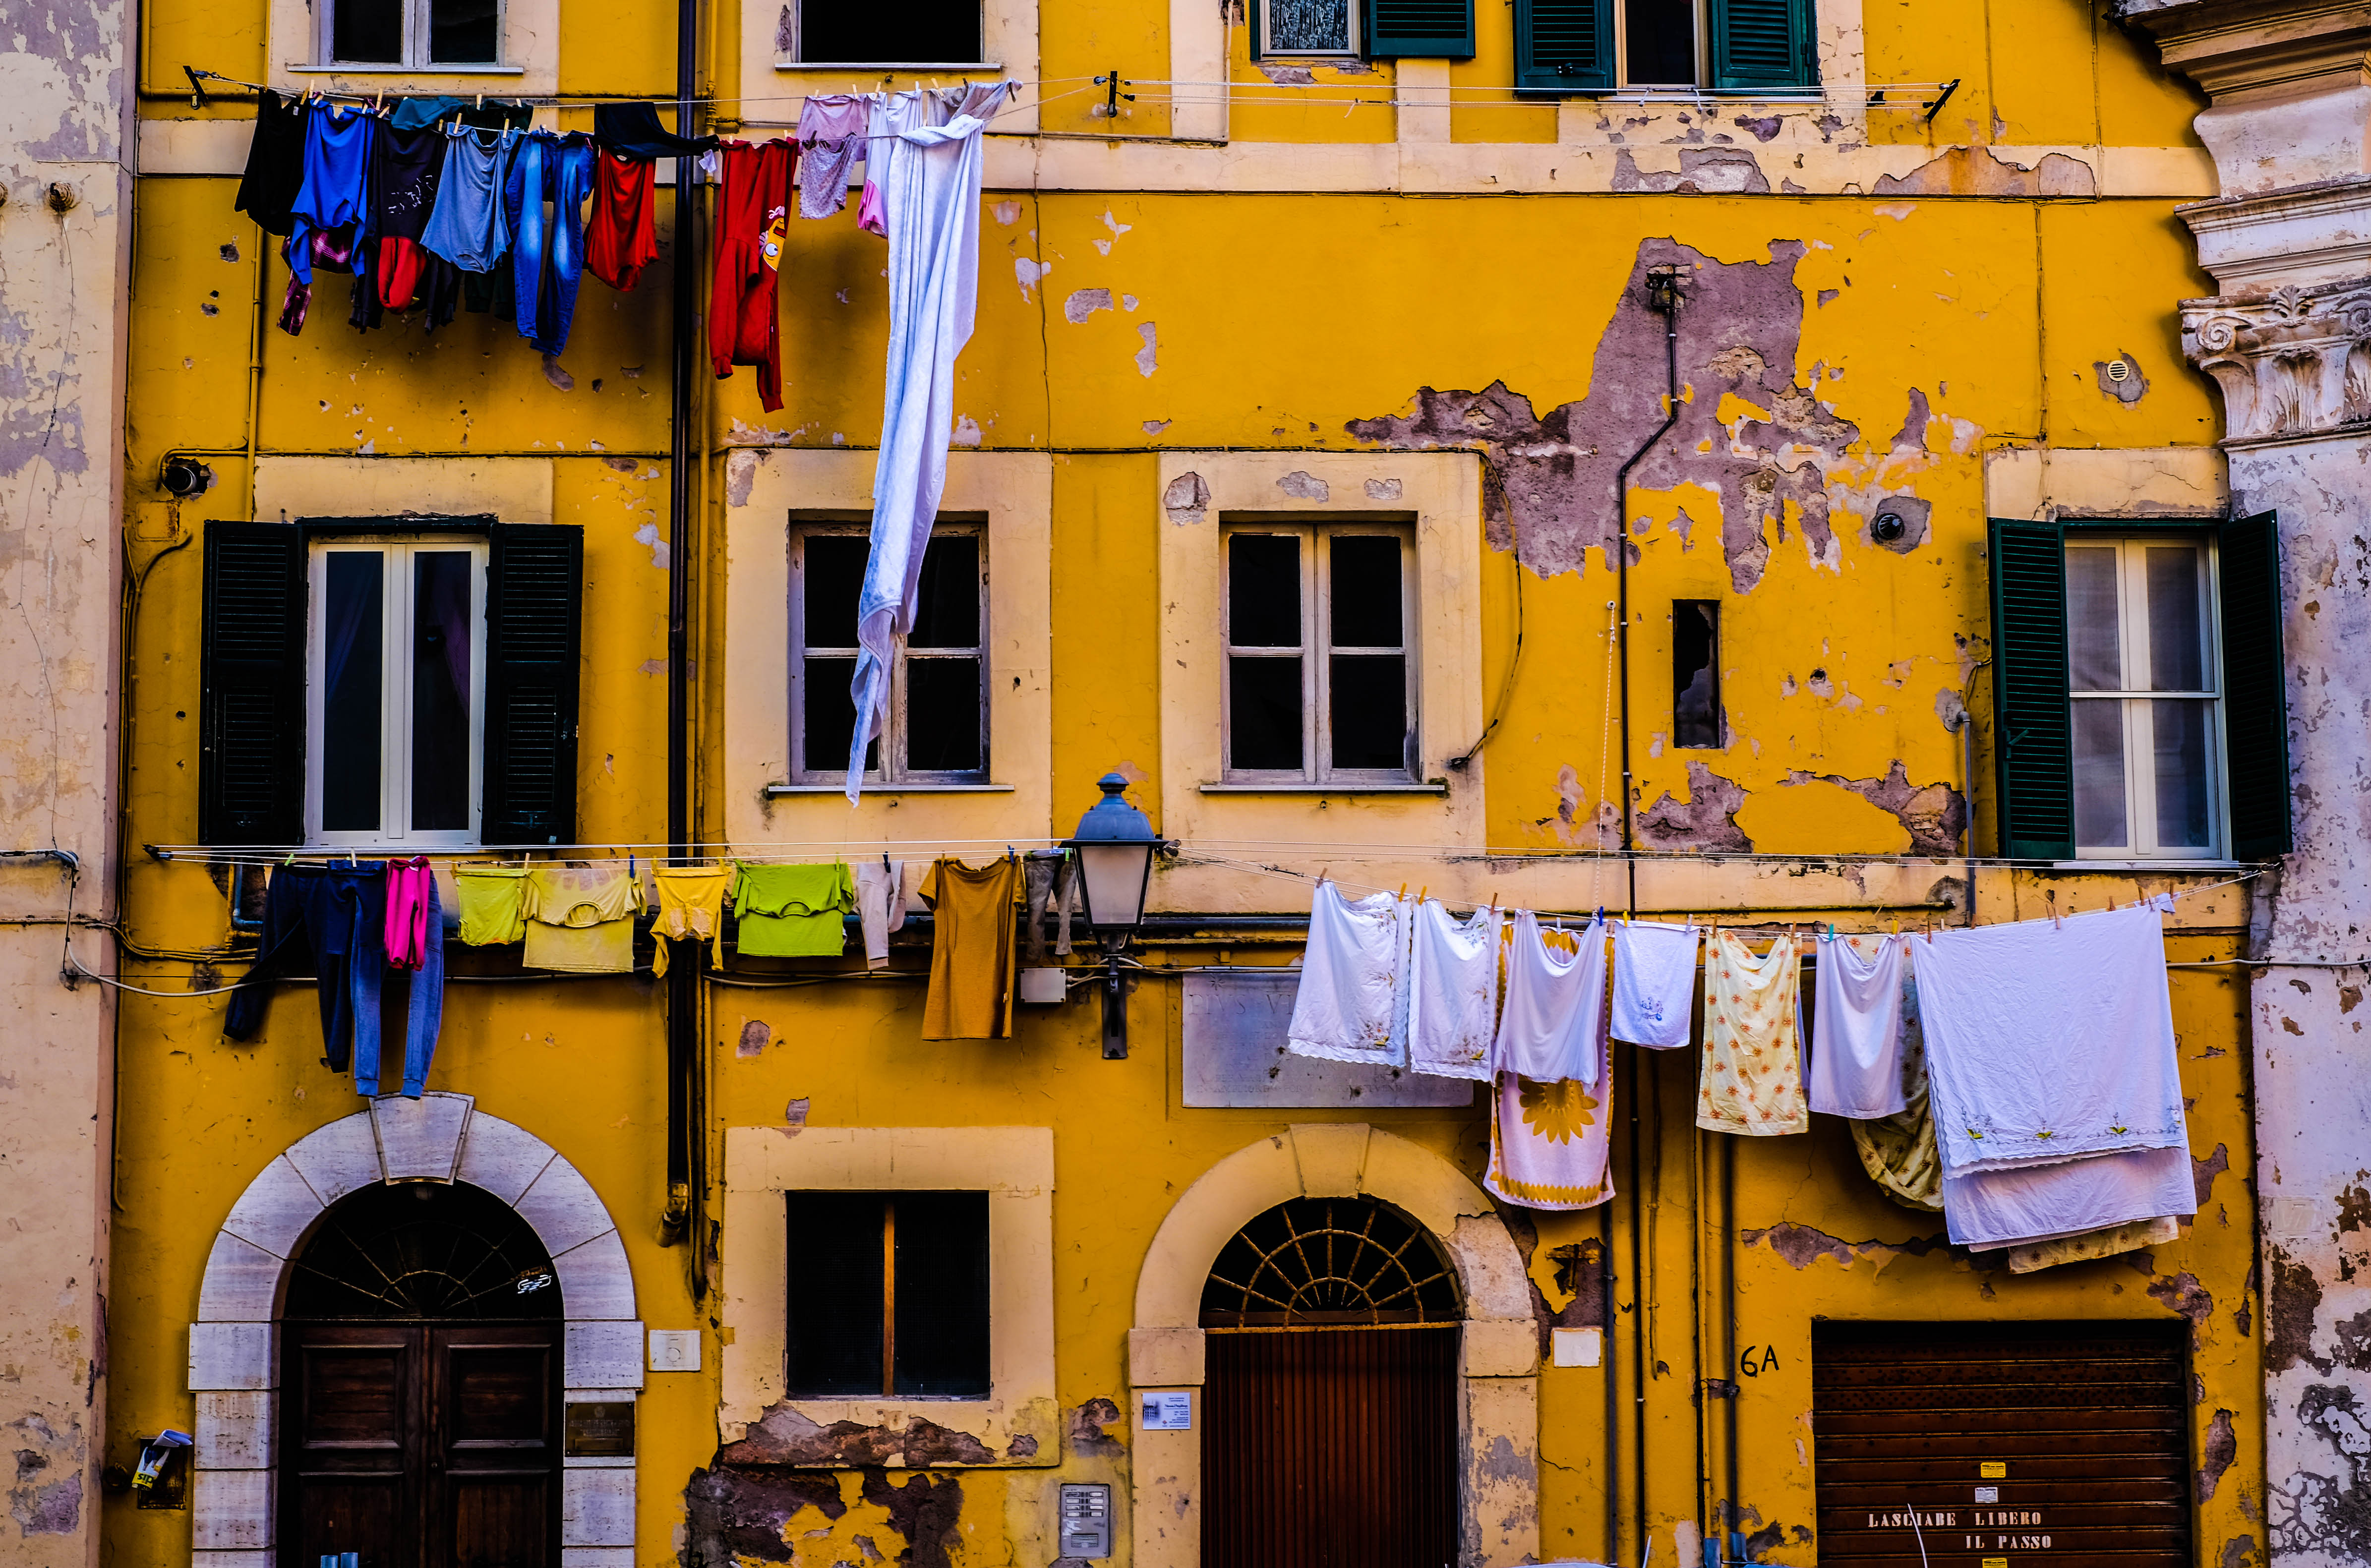 Un edificio histórico, ropa tendida y el revoque que se desprende: Piazza Leandra según Marco Quartieri #postalesdecivitavecchia